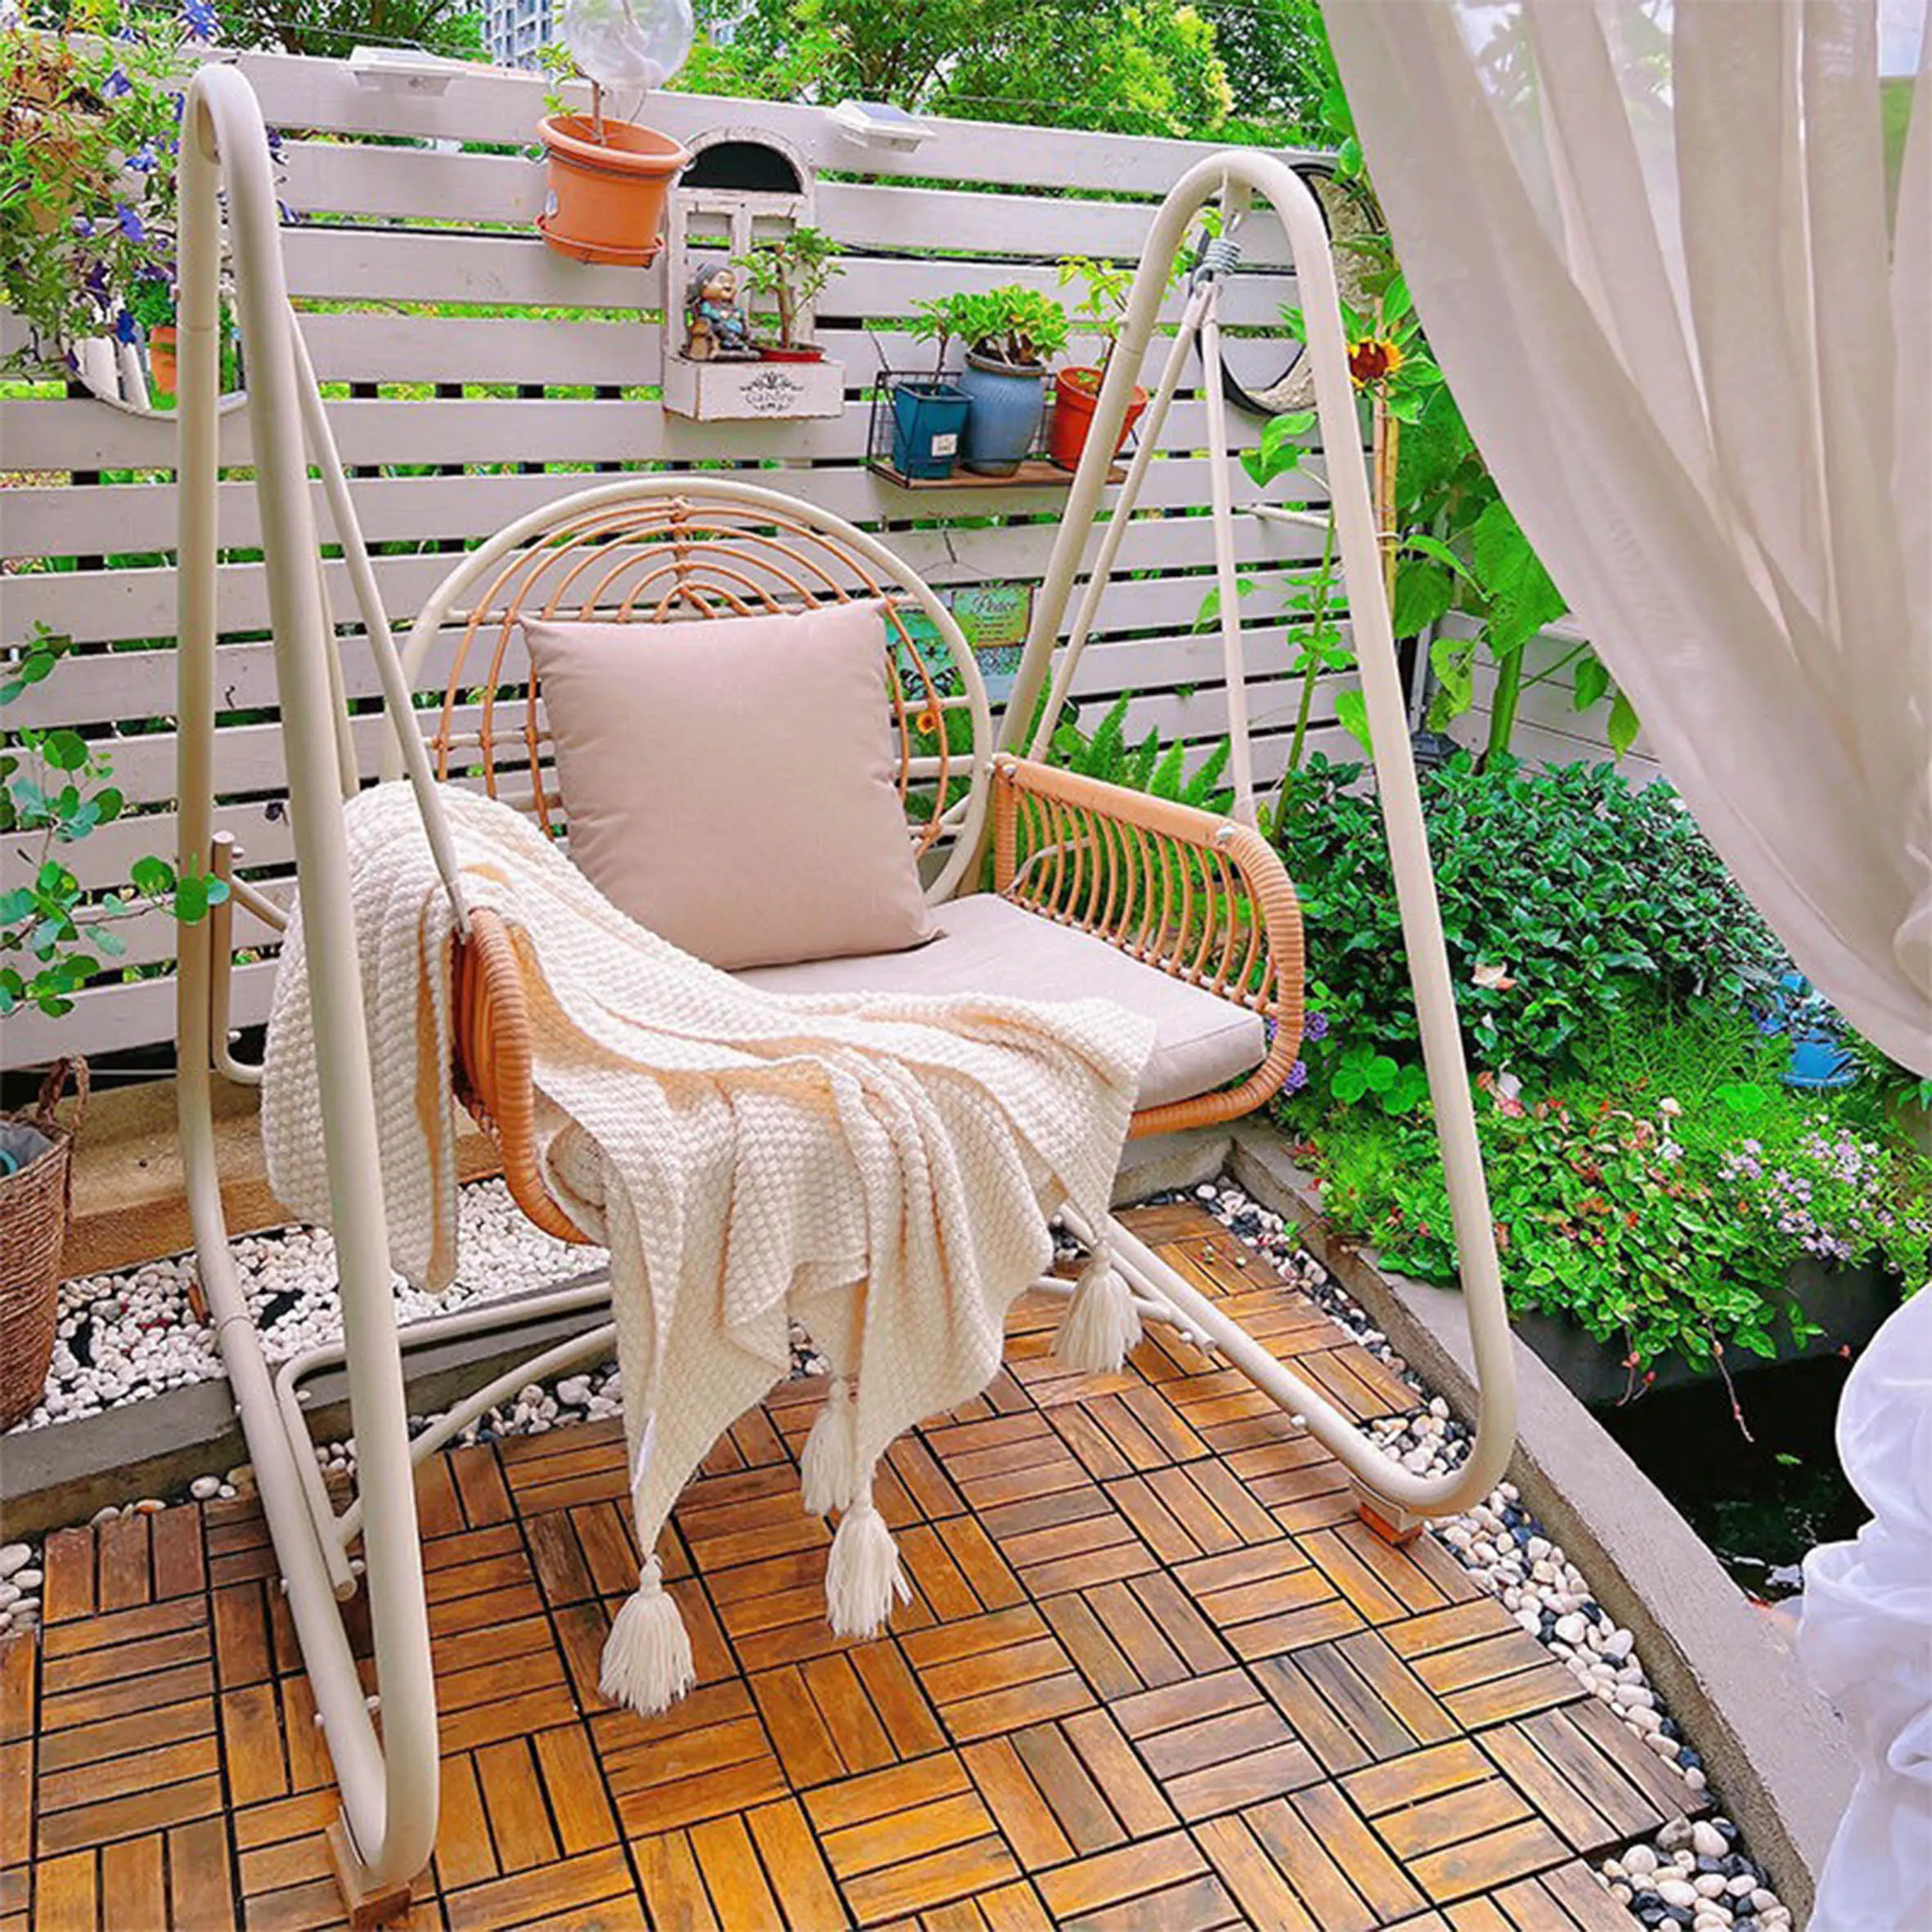 자연 고리 버들 야외 의자 스윙 파티오 교수형 의자 계란, 등나무 정원 계란 의자 스윙 짠 요람 발코니 안뜰/